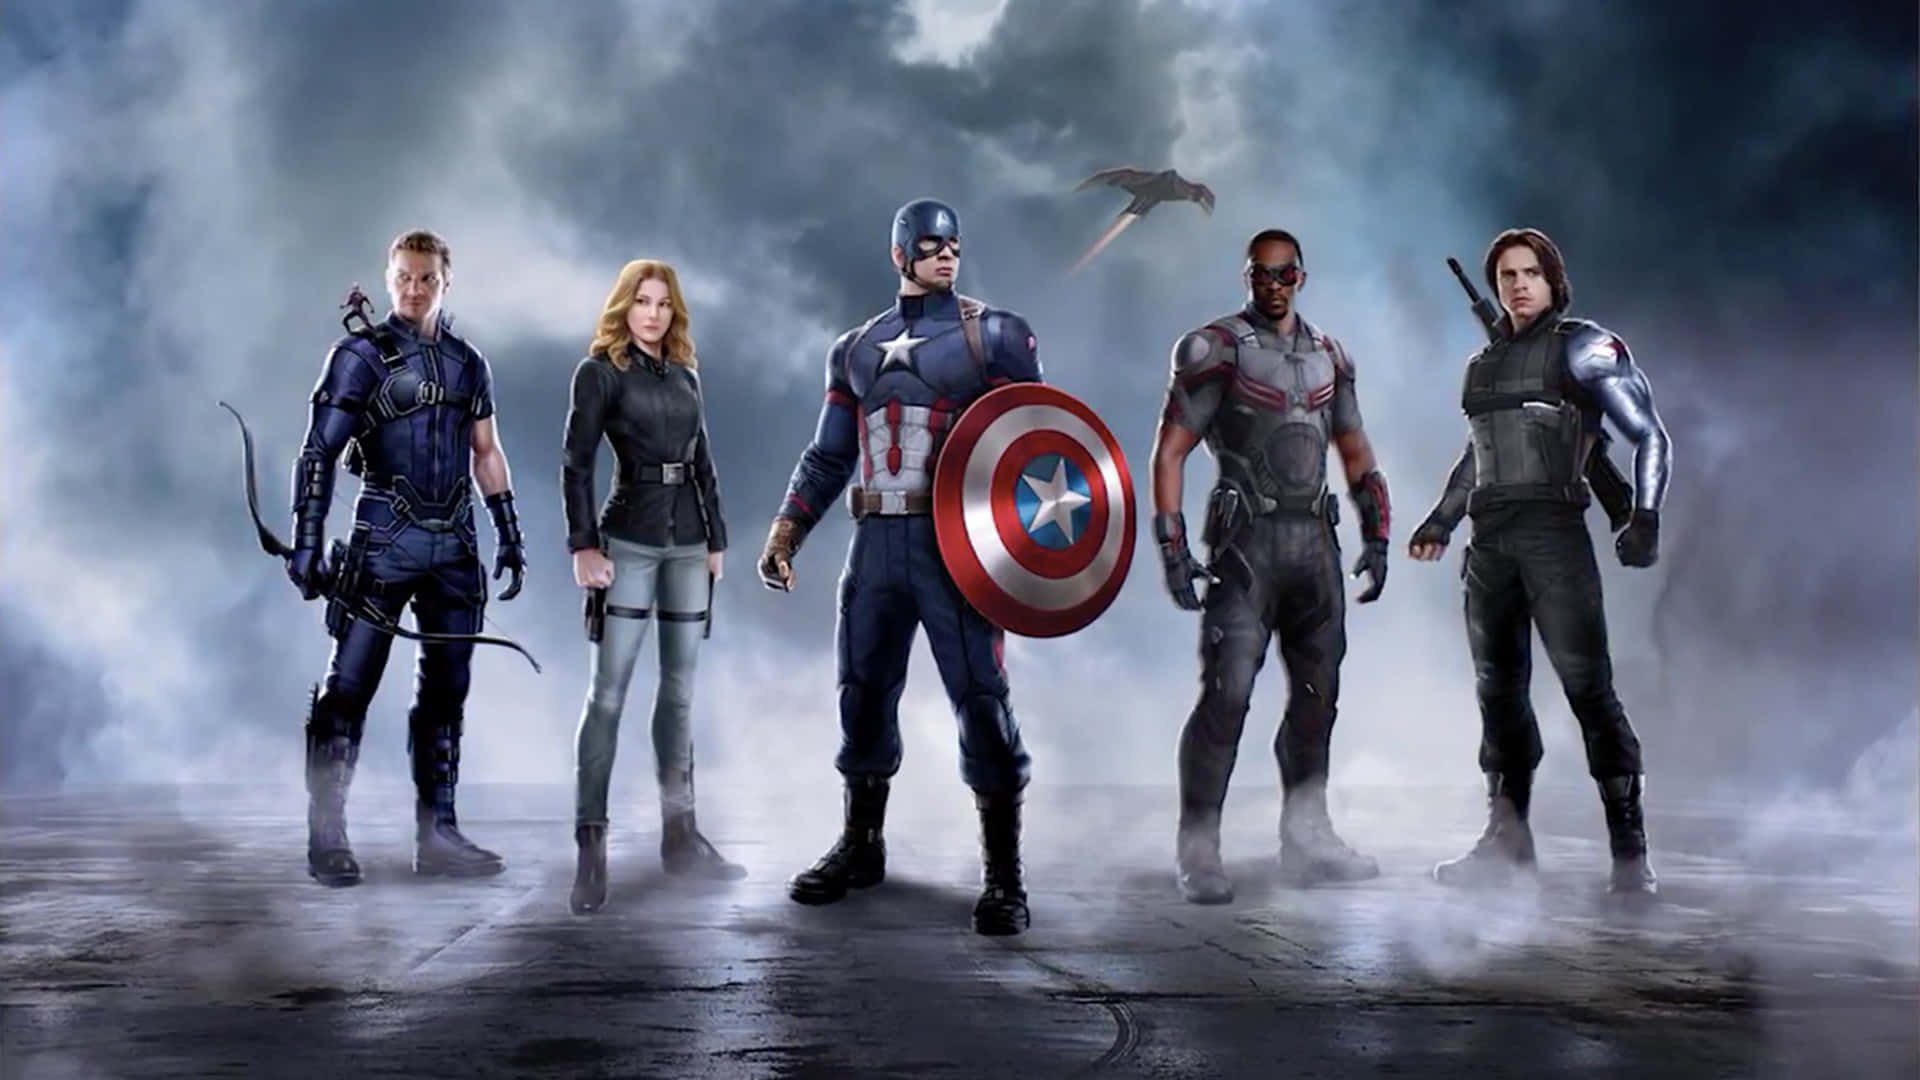 Aufstehenund Beschützen - Captain America